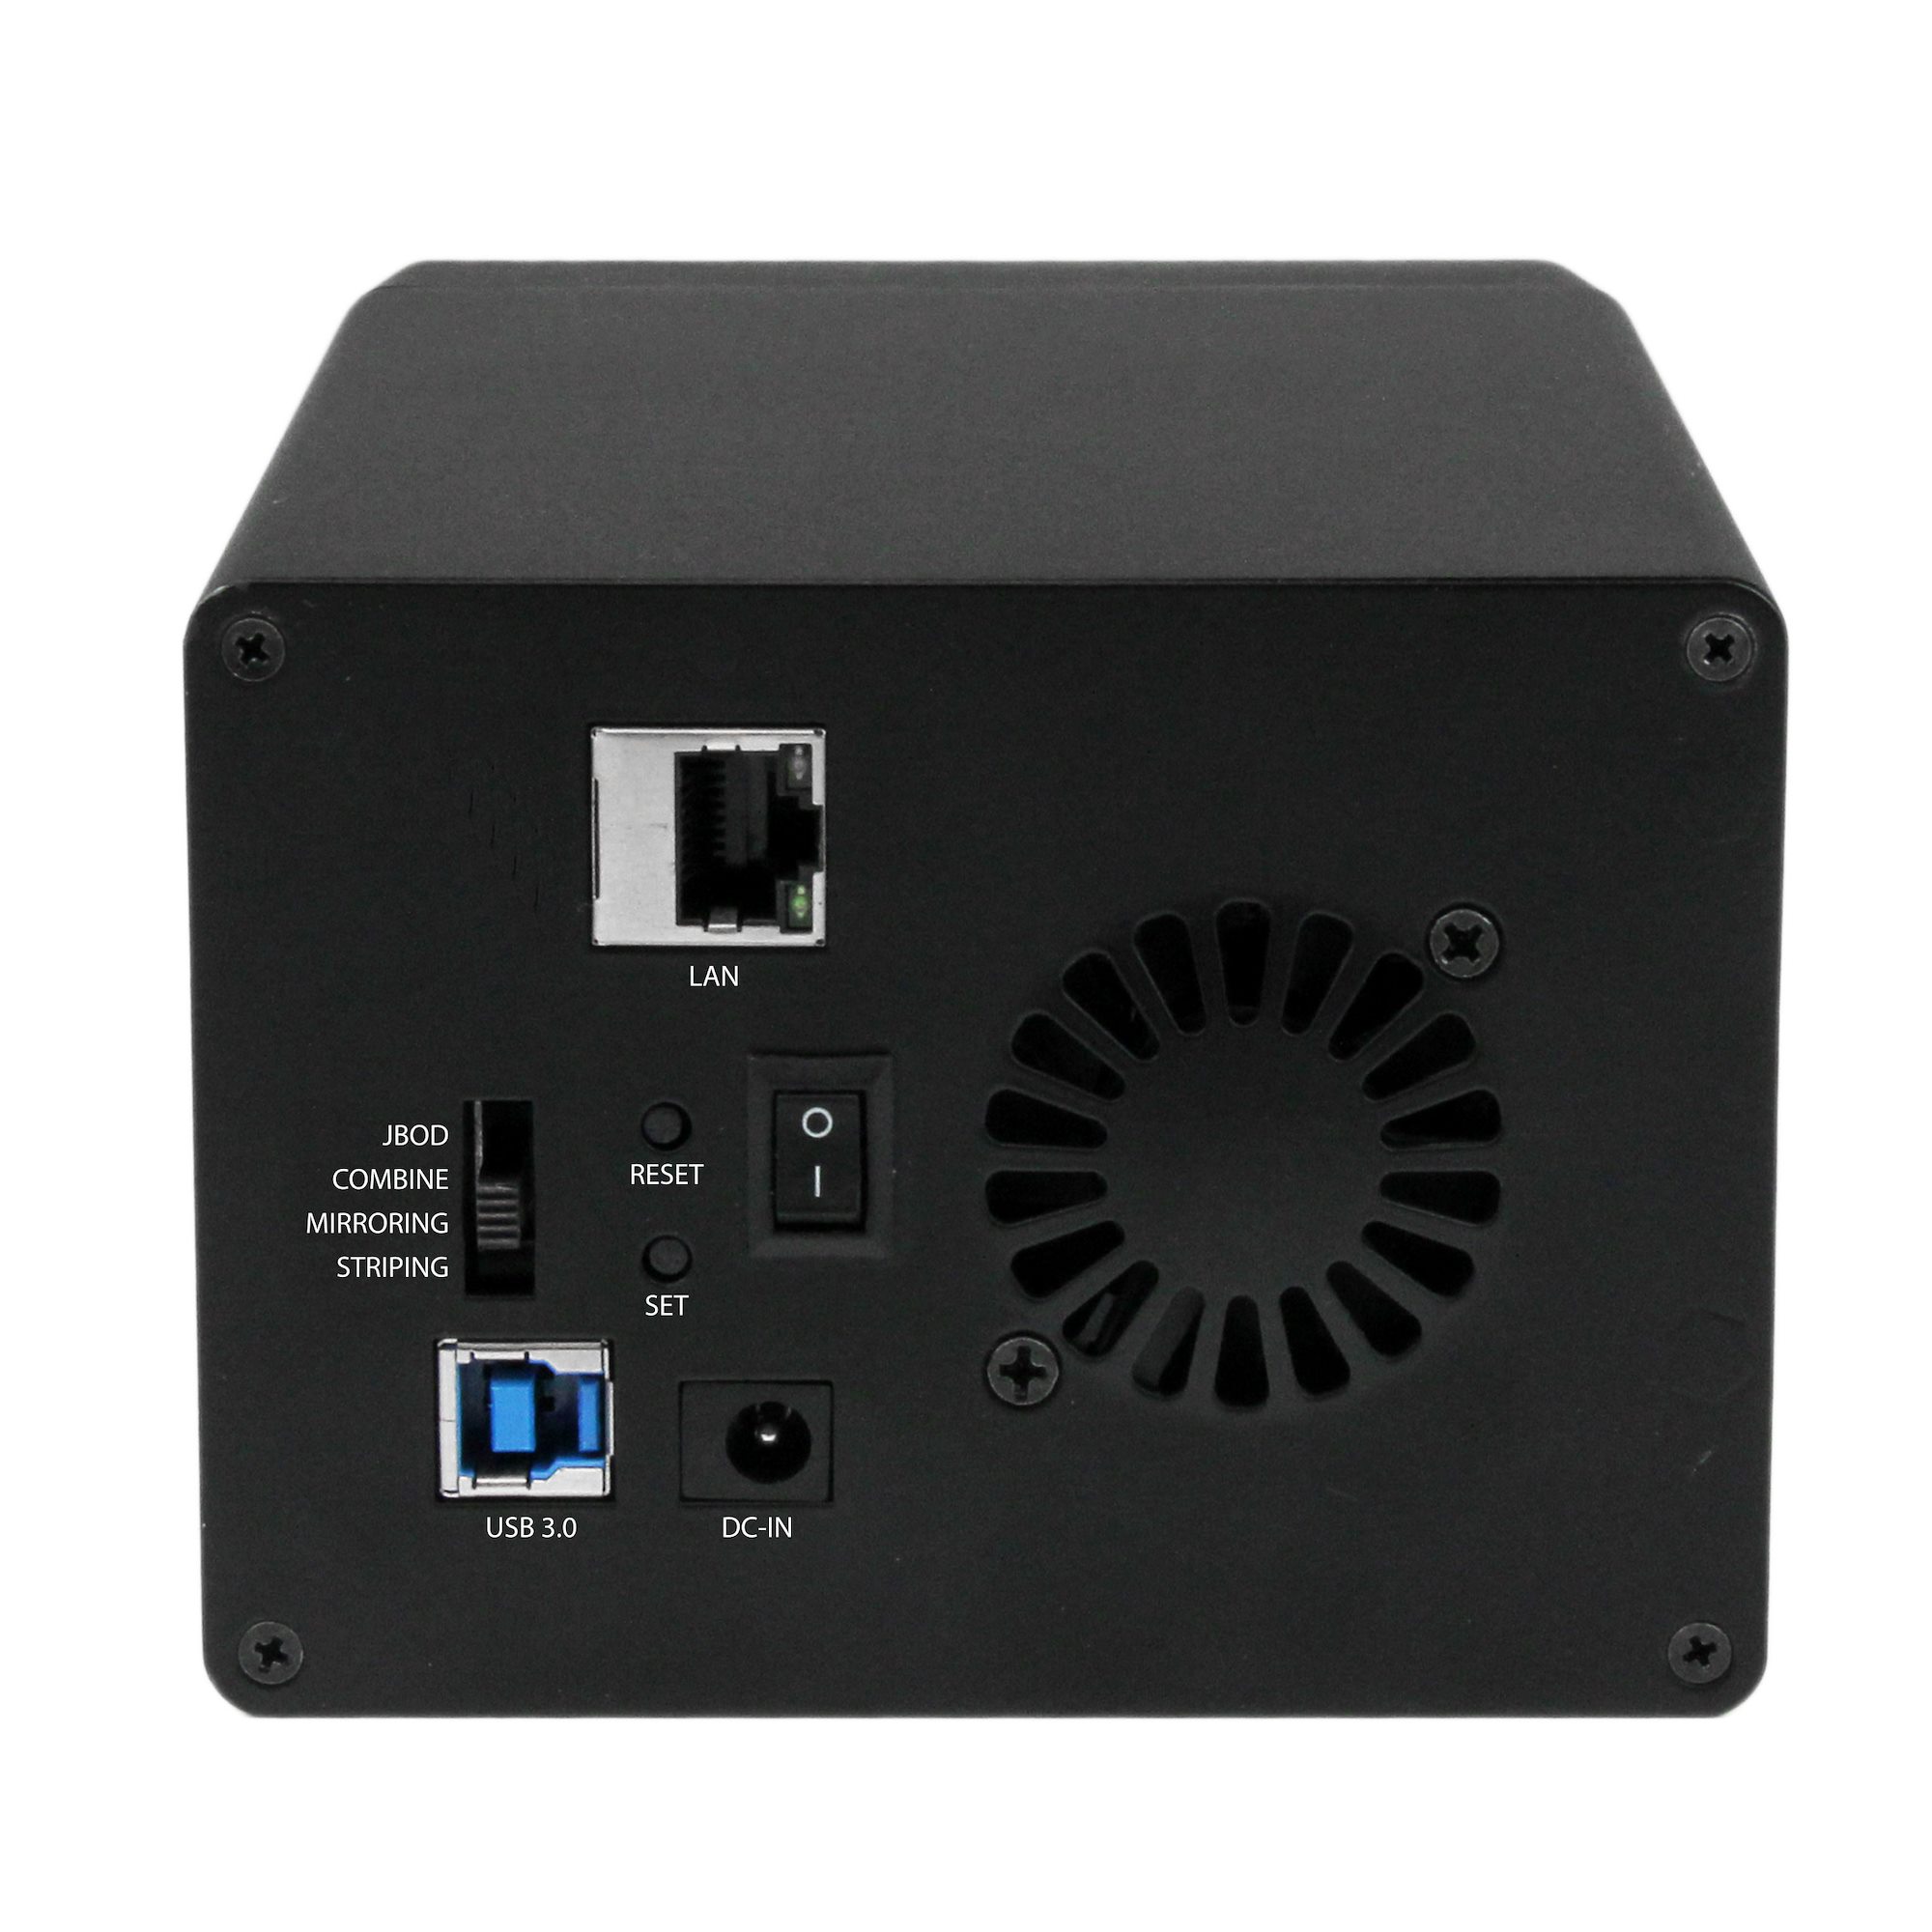 Boîtier Serveur Gigabit NAS RAID pour 2 Disques Durs SATA 3,5 avec WebDAV  et Serveur Multimédia